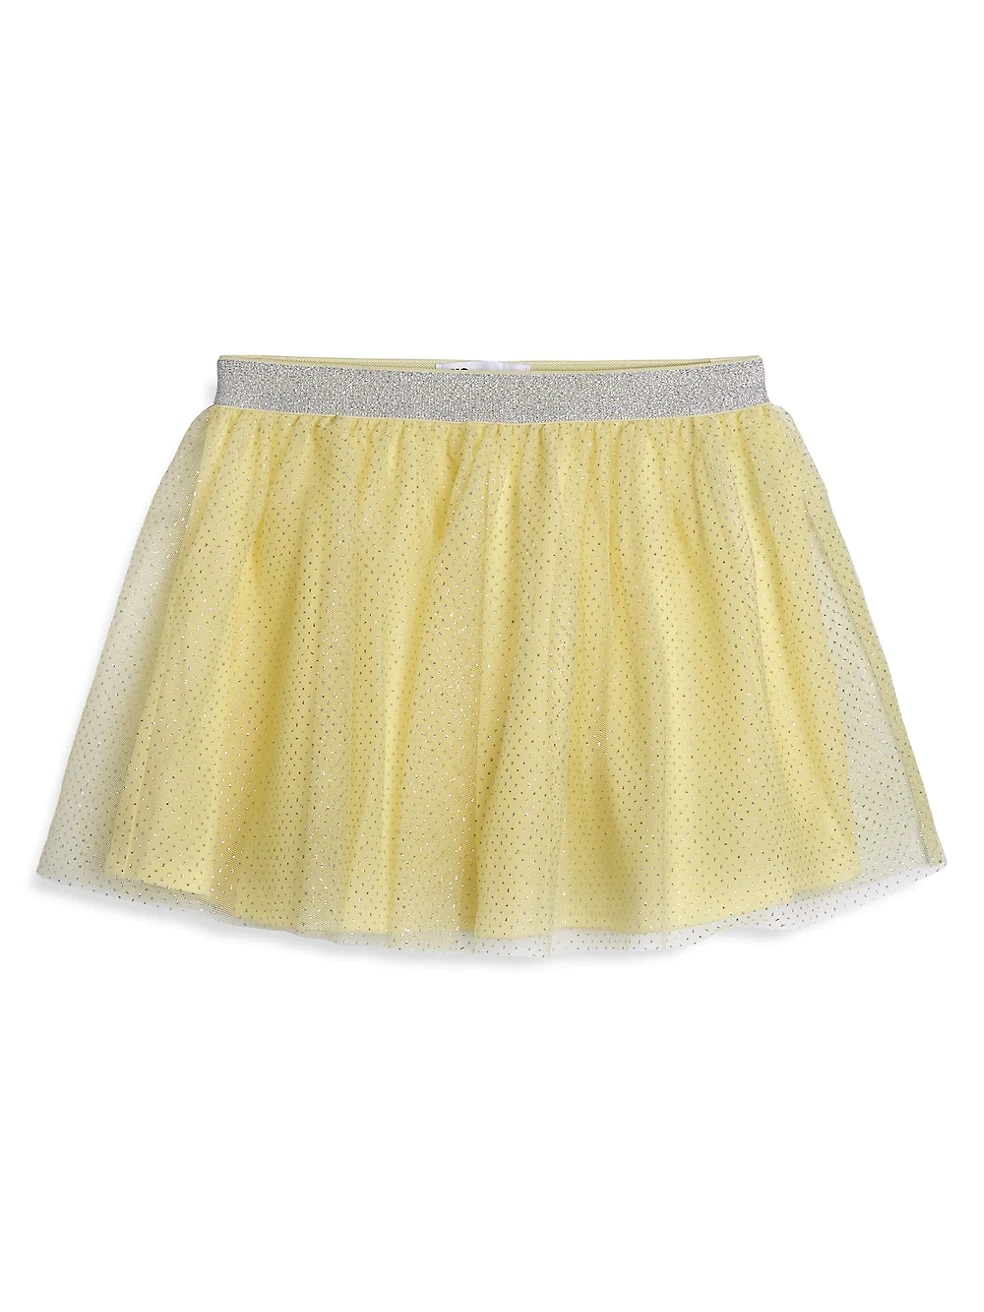 Little Girls' Tutu Skirt for Easter - SavvyMom